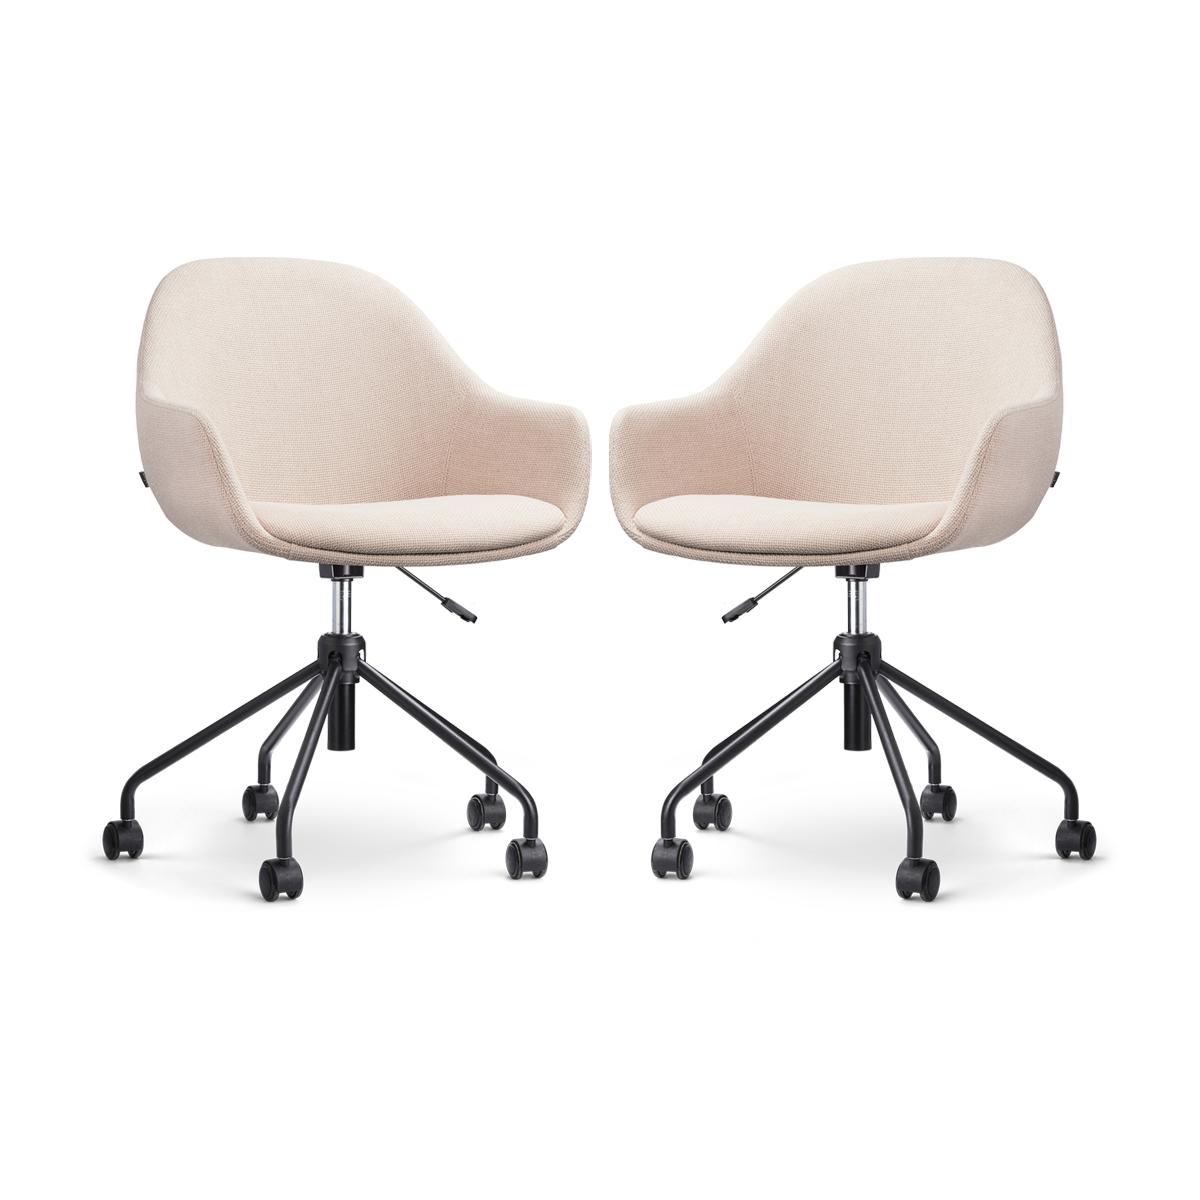 Nout-Mae bureaustoel beige - zwart onderstel - set van 2